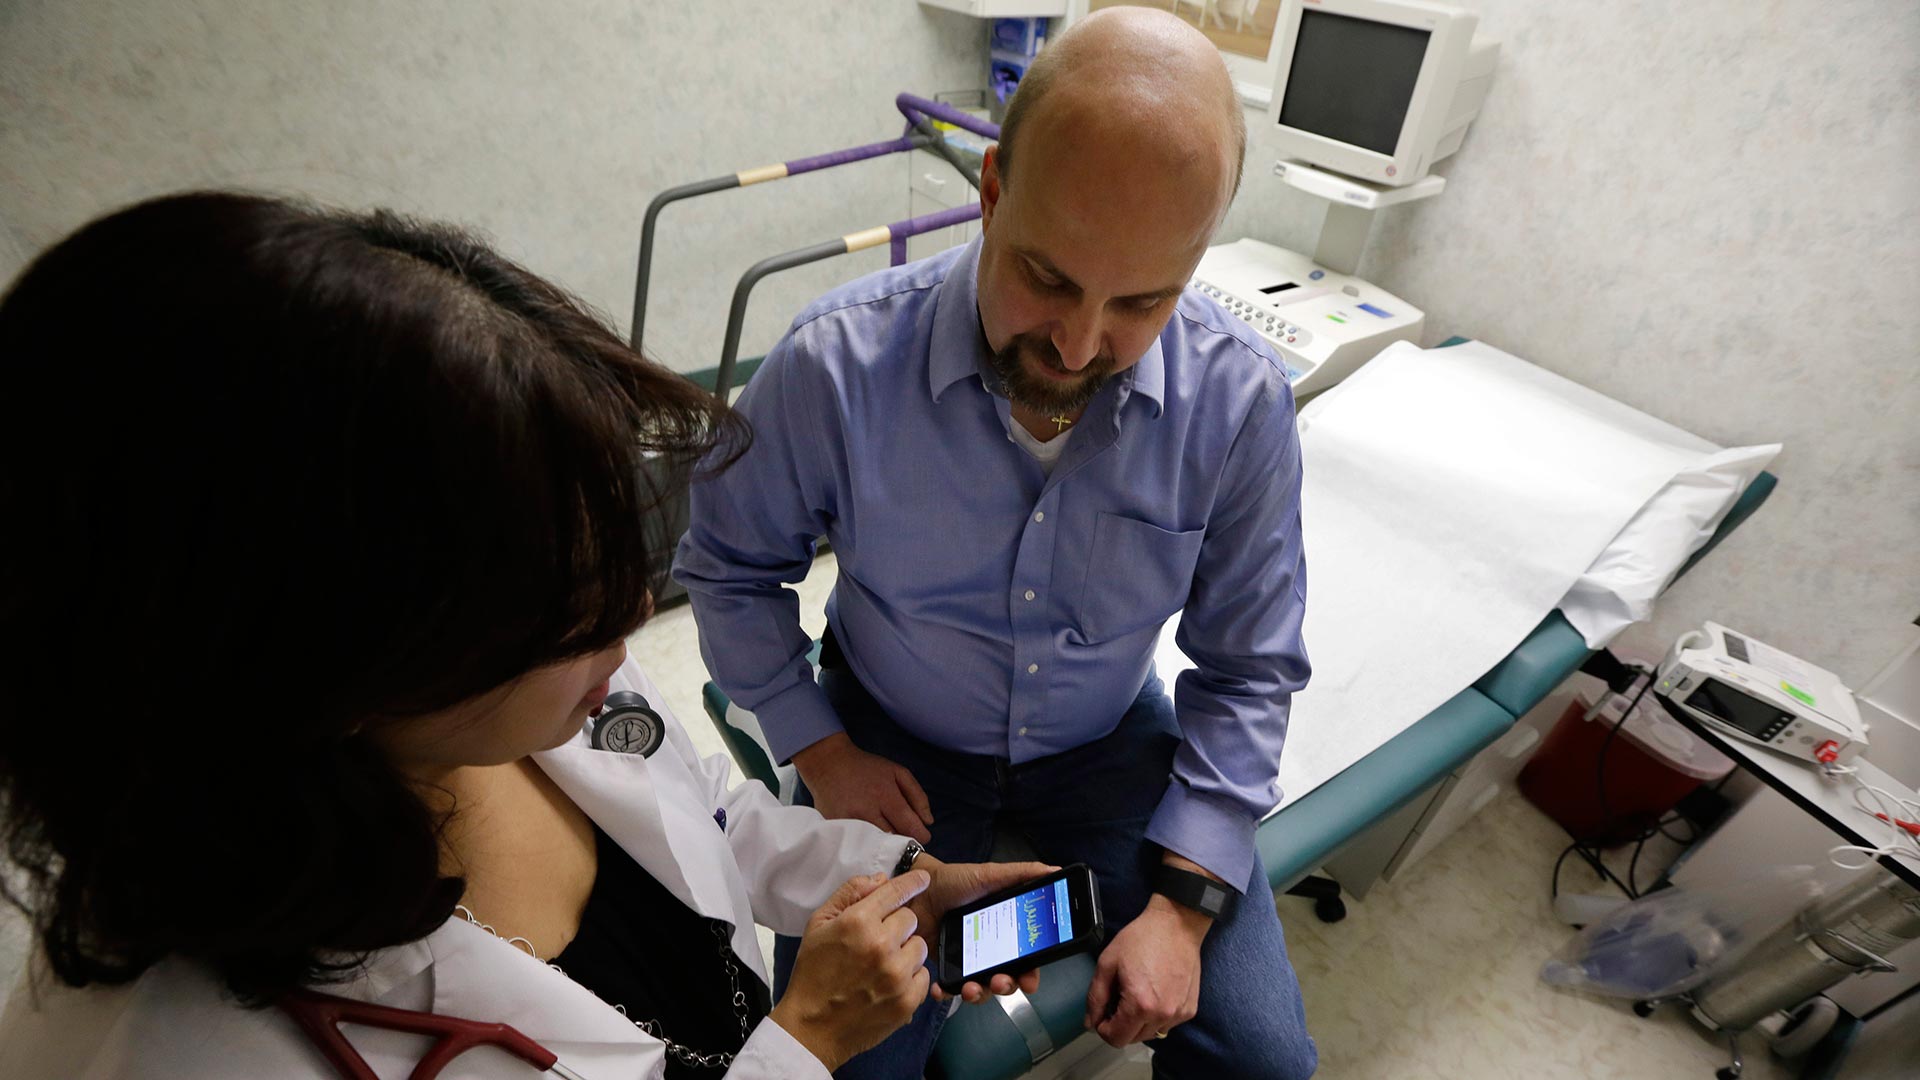 Las ‘apps’ de salud ponen en riesgo millones de datos personales